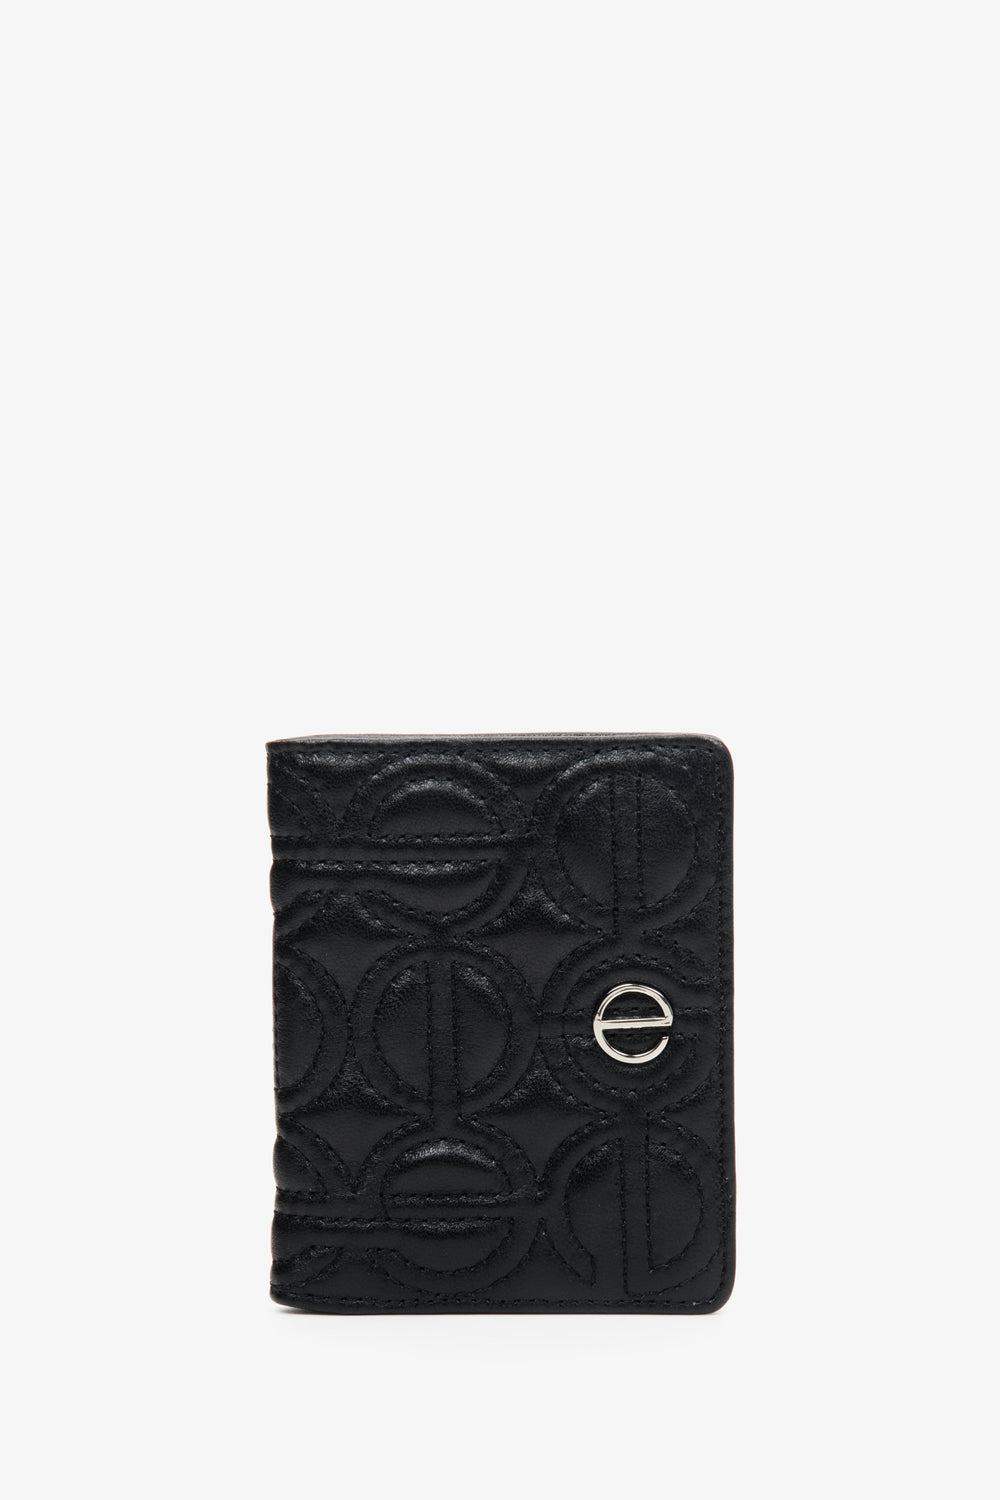 Mały skórzany portfel damski w kolorze czarnym ze srebrnymi okuciami Estro ER00113655